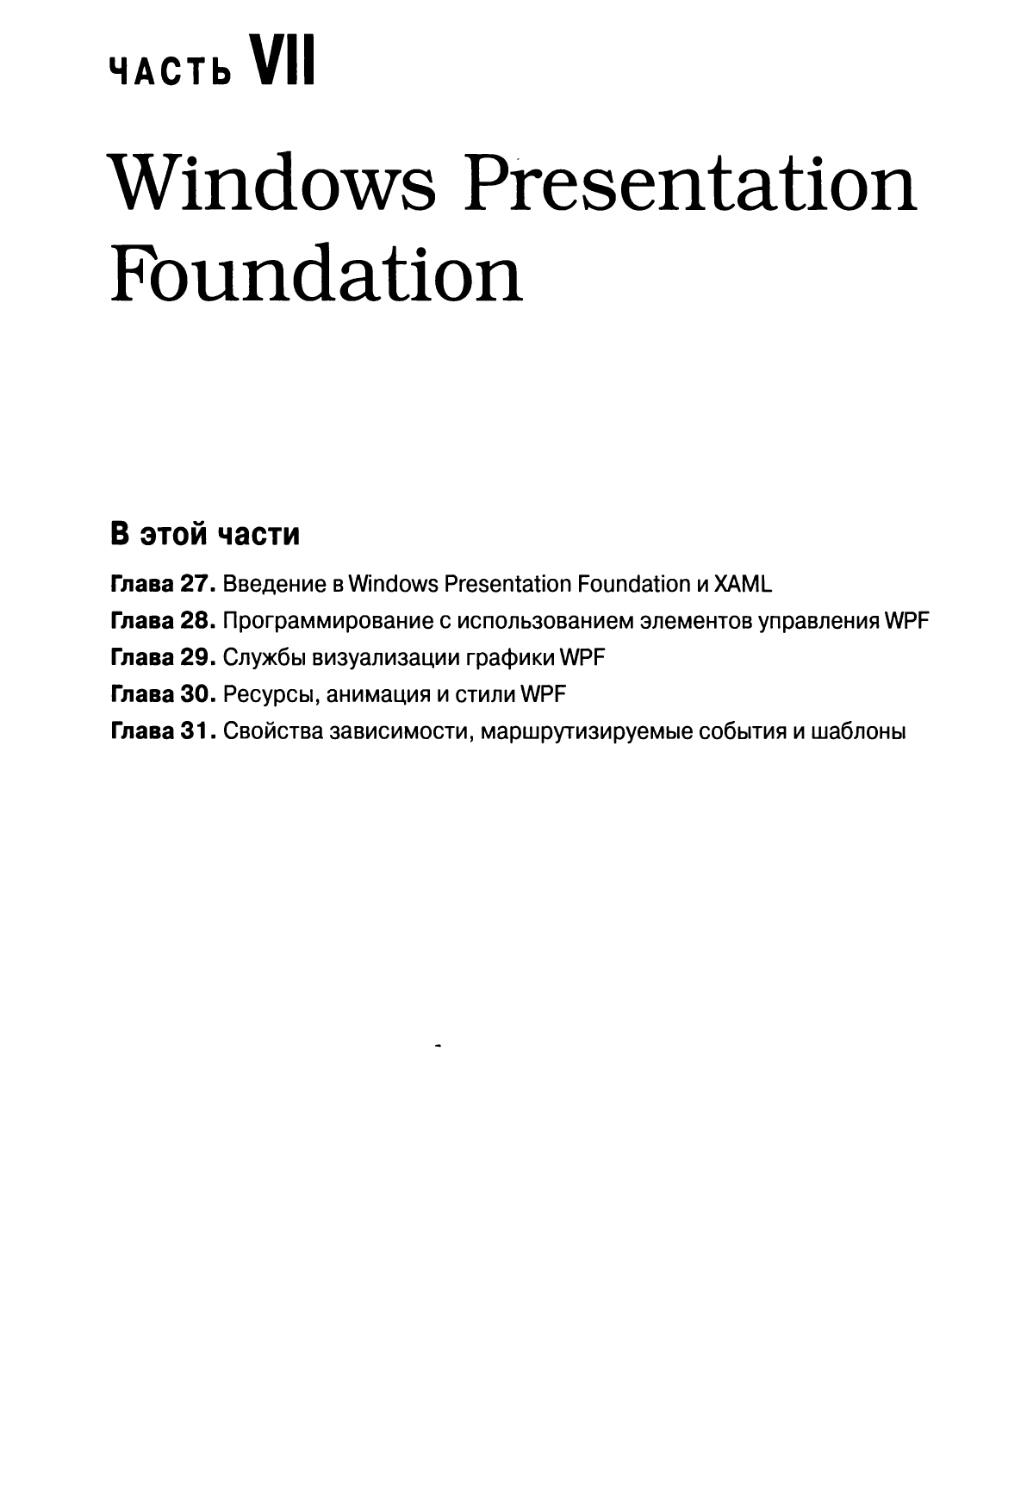 Часть VII. Windows Presentation Foundation